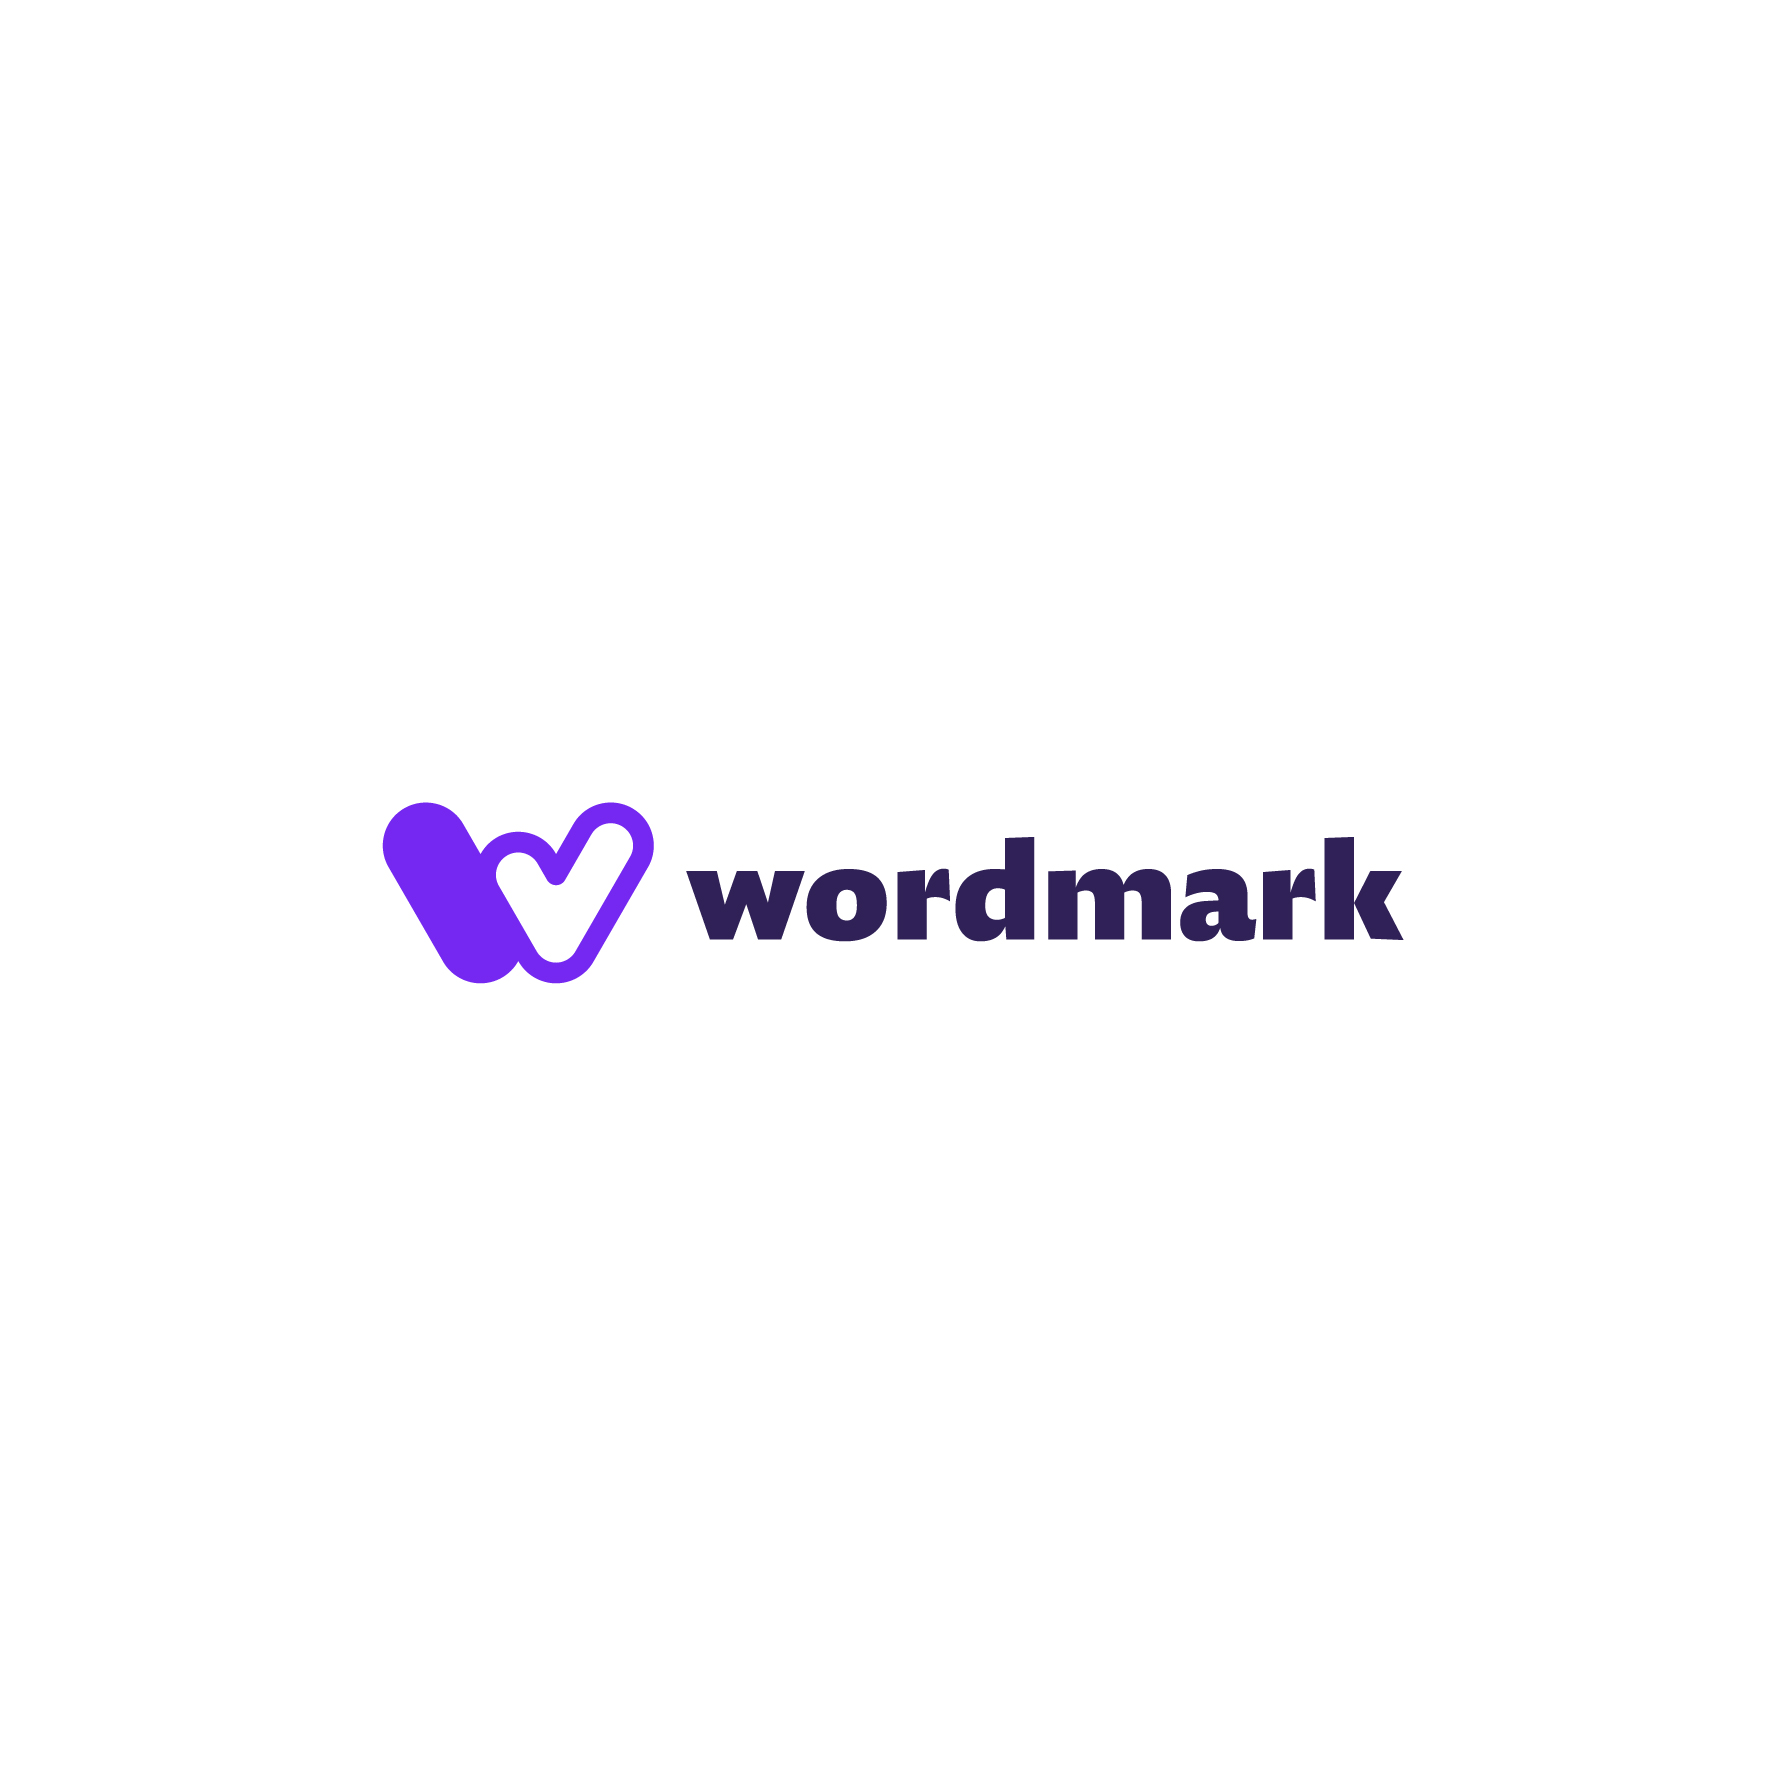 Wordmark_02_logo